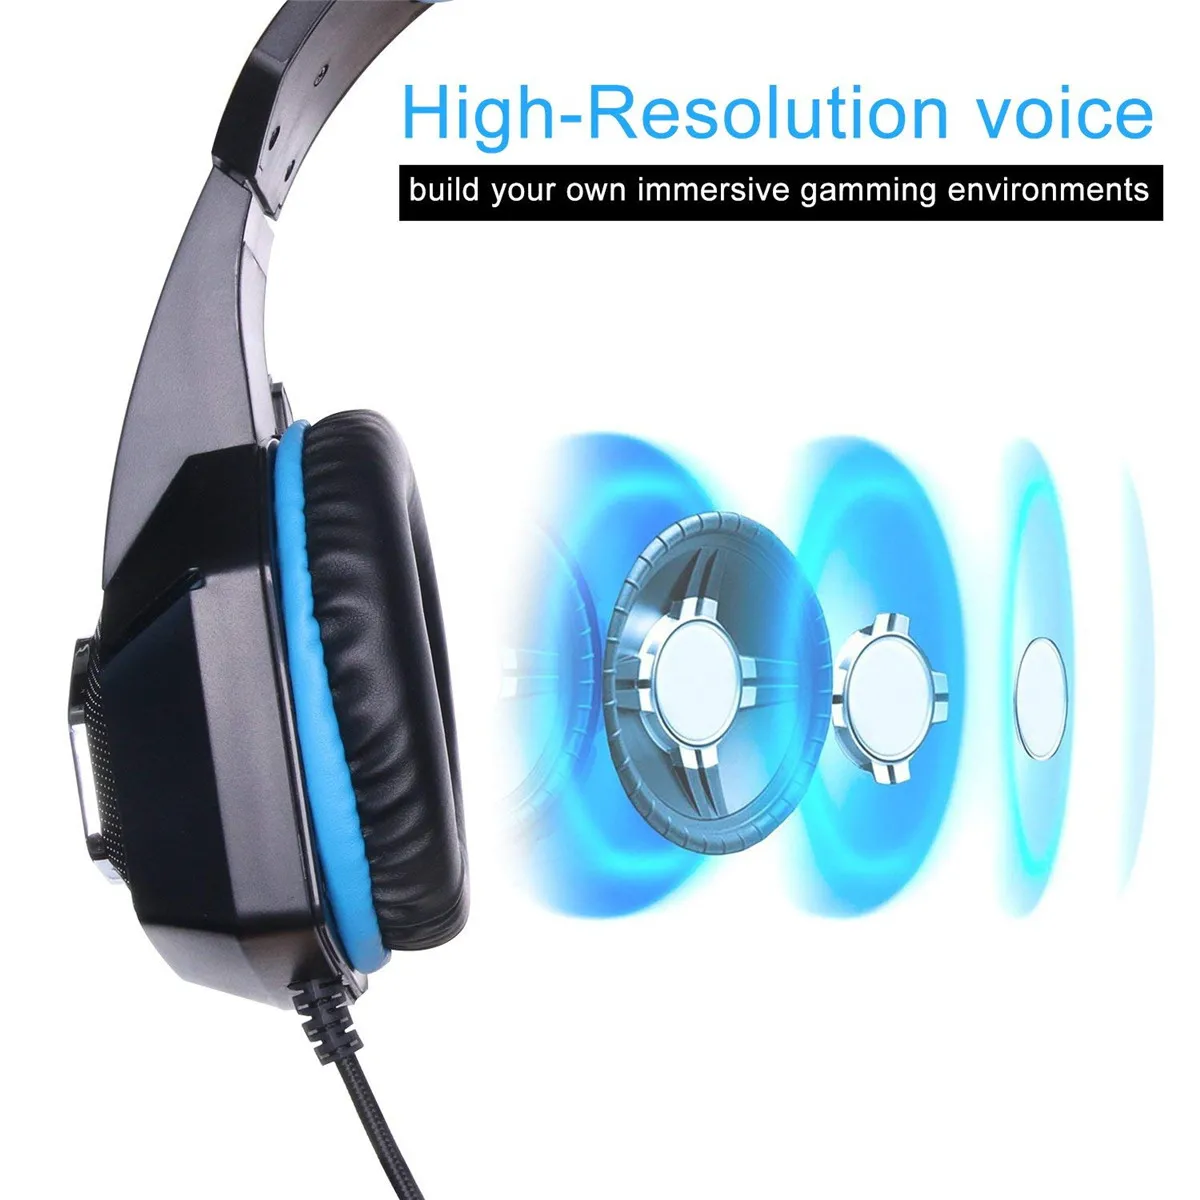 Игровая стереогарнитура Hunterspider V1 Heaphone с микрофоном 7 светодиодный светильник для Xbox One PS4 PC+ 7 кнопок 5500 dpi игровая мышь Игровые мыши